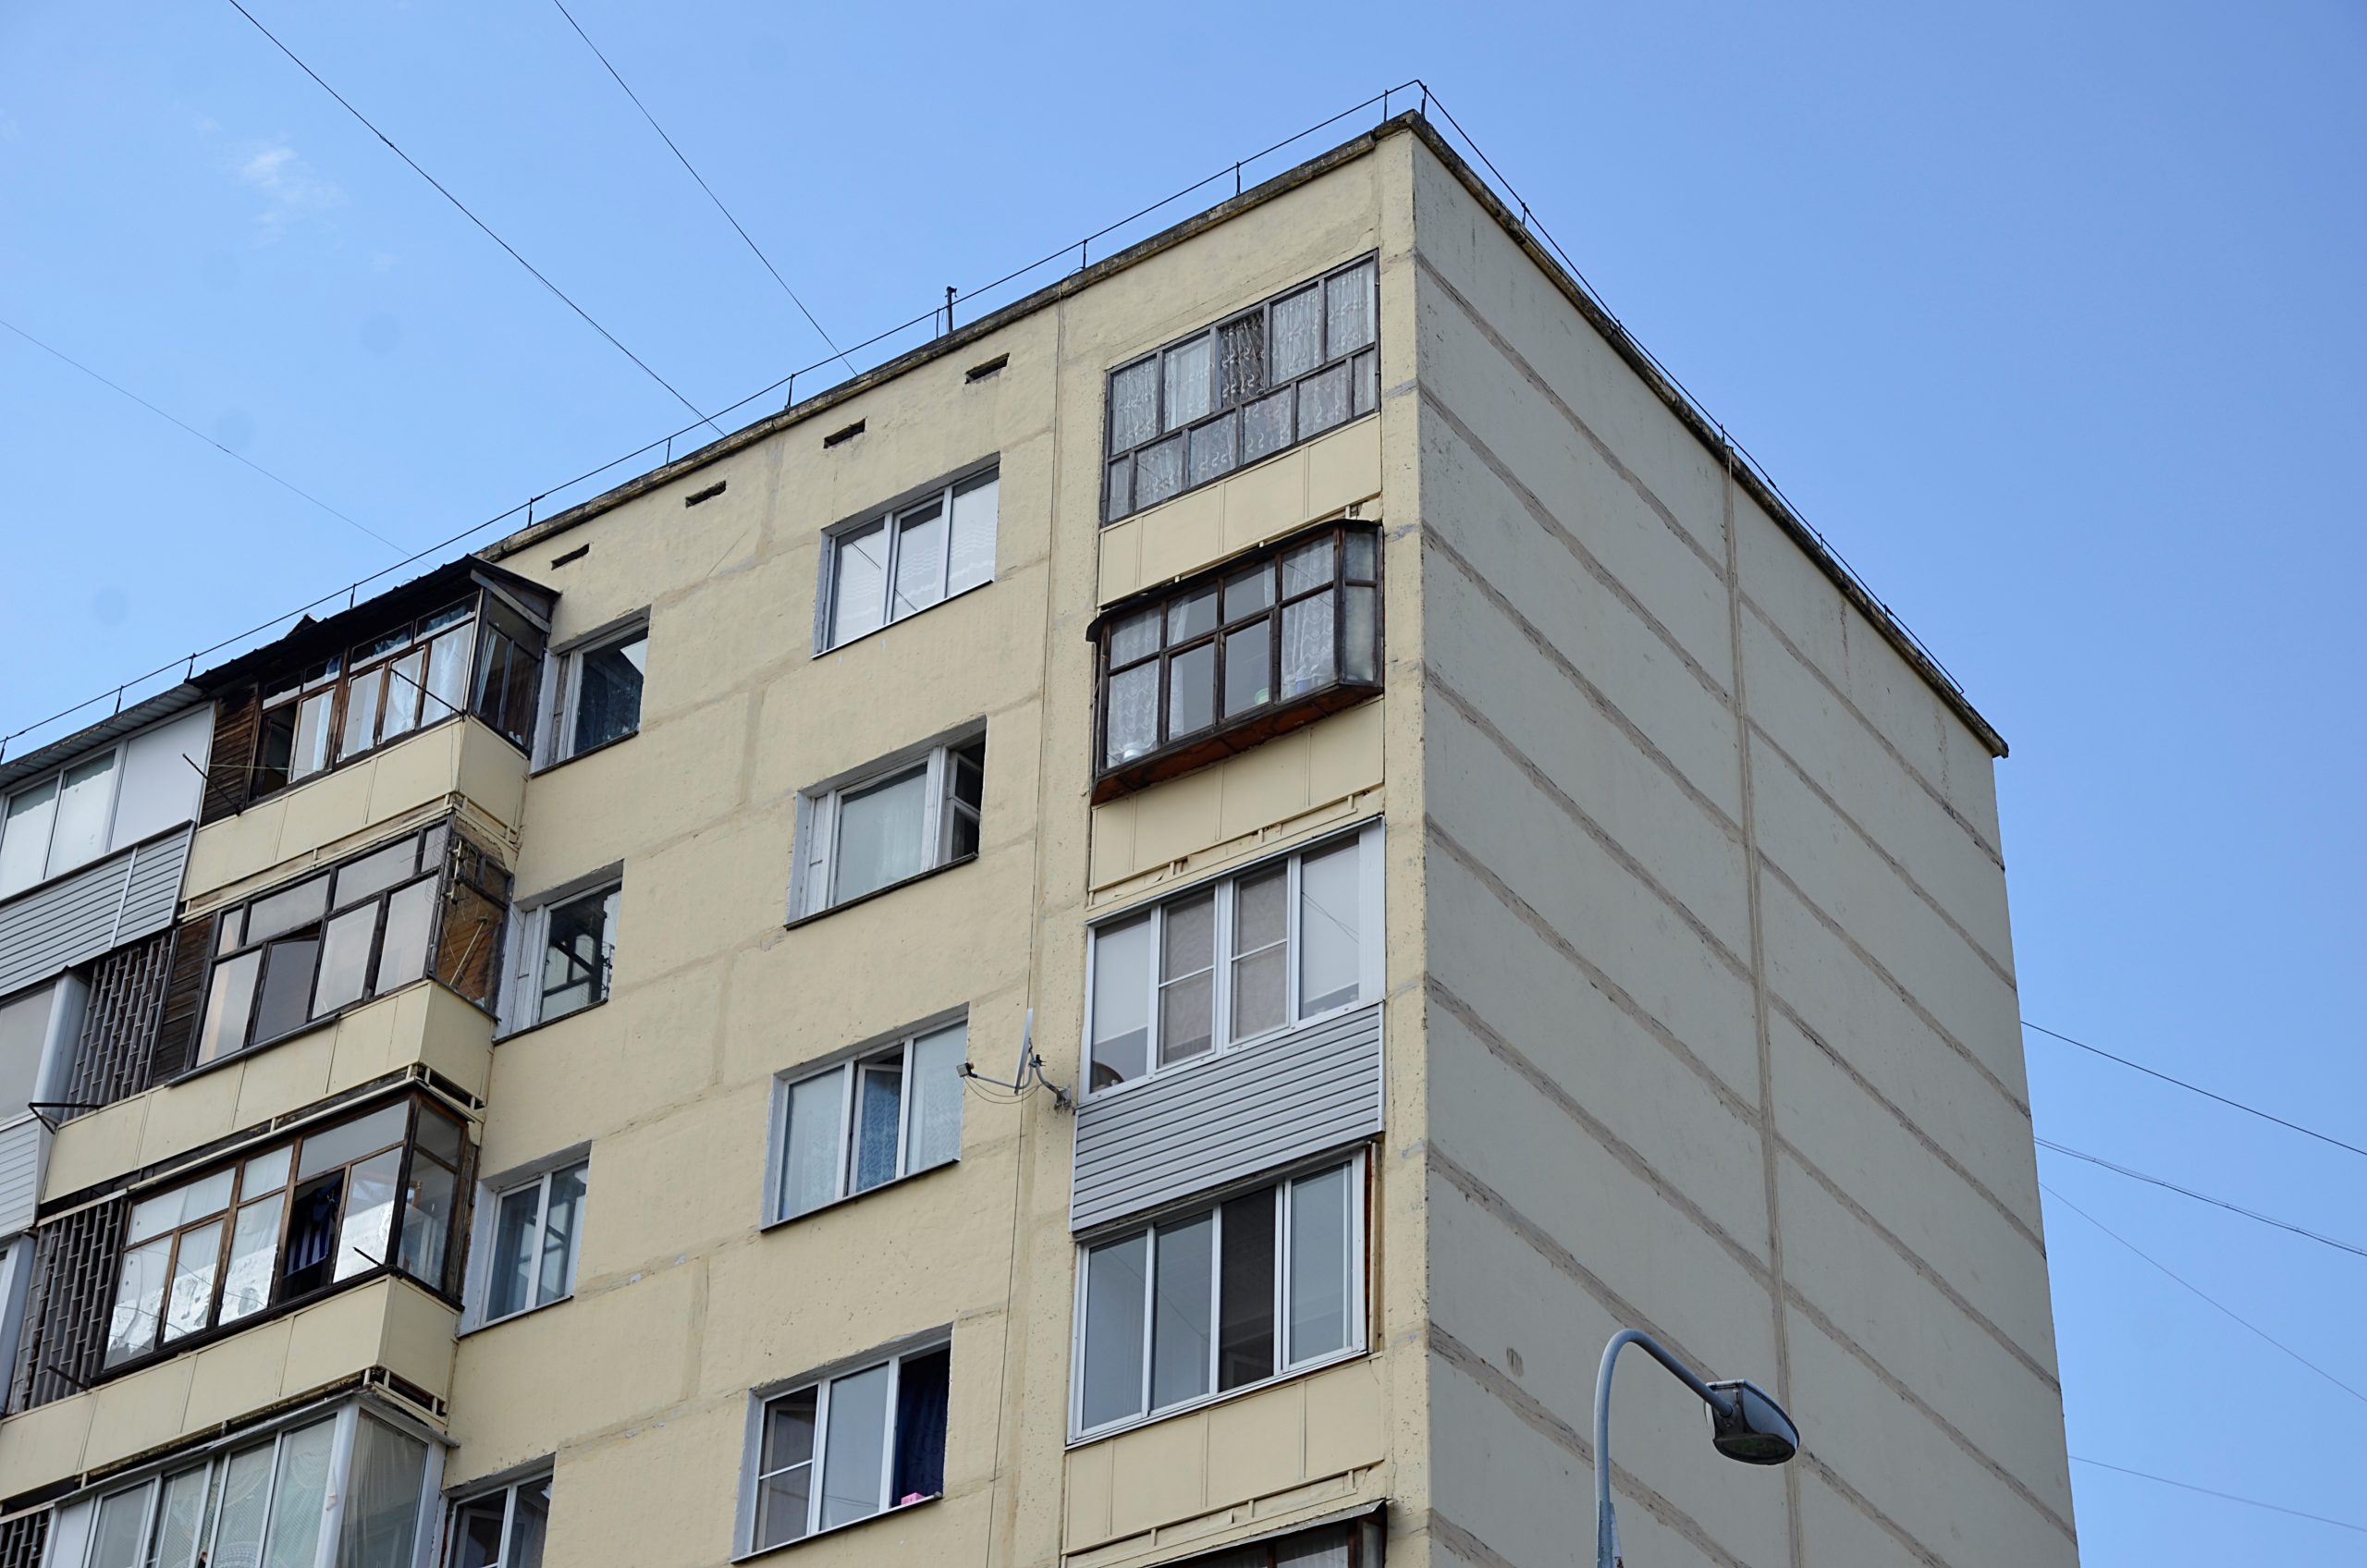 Профилактическая проверка жилого фонда состоится в поселении Киевский